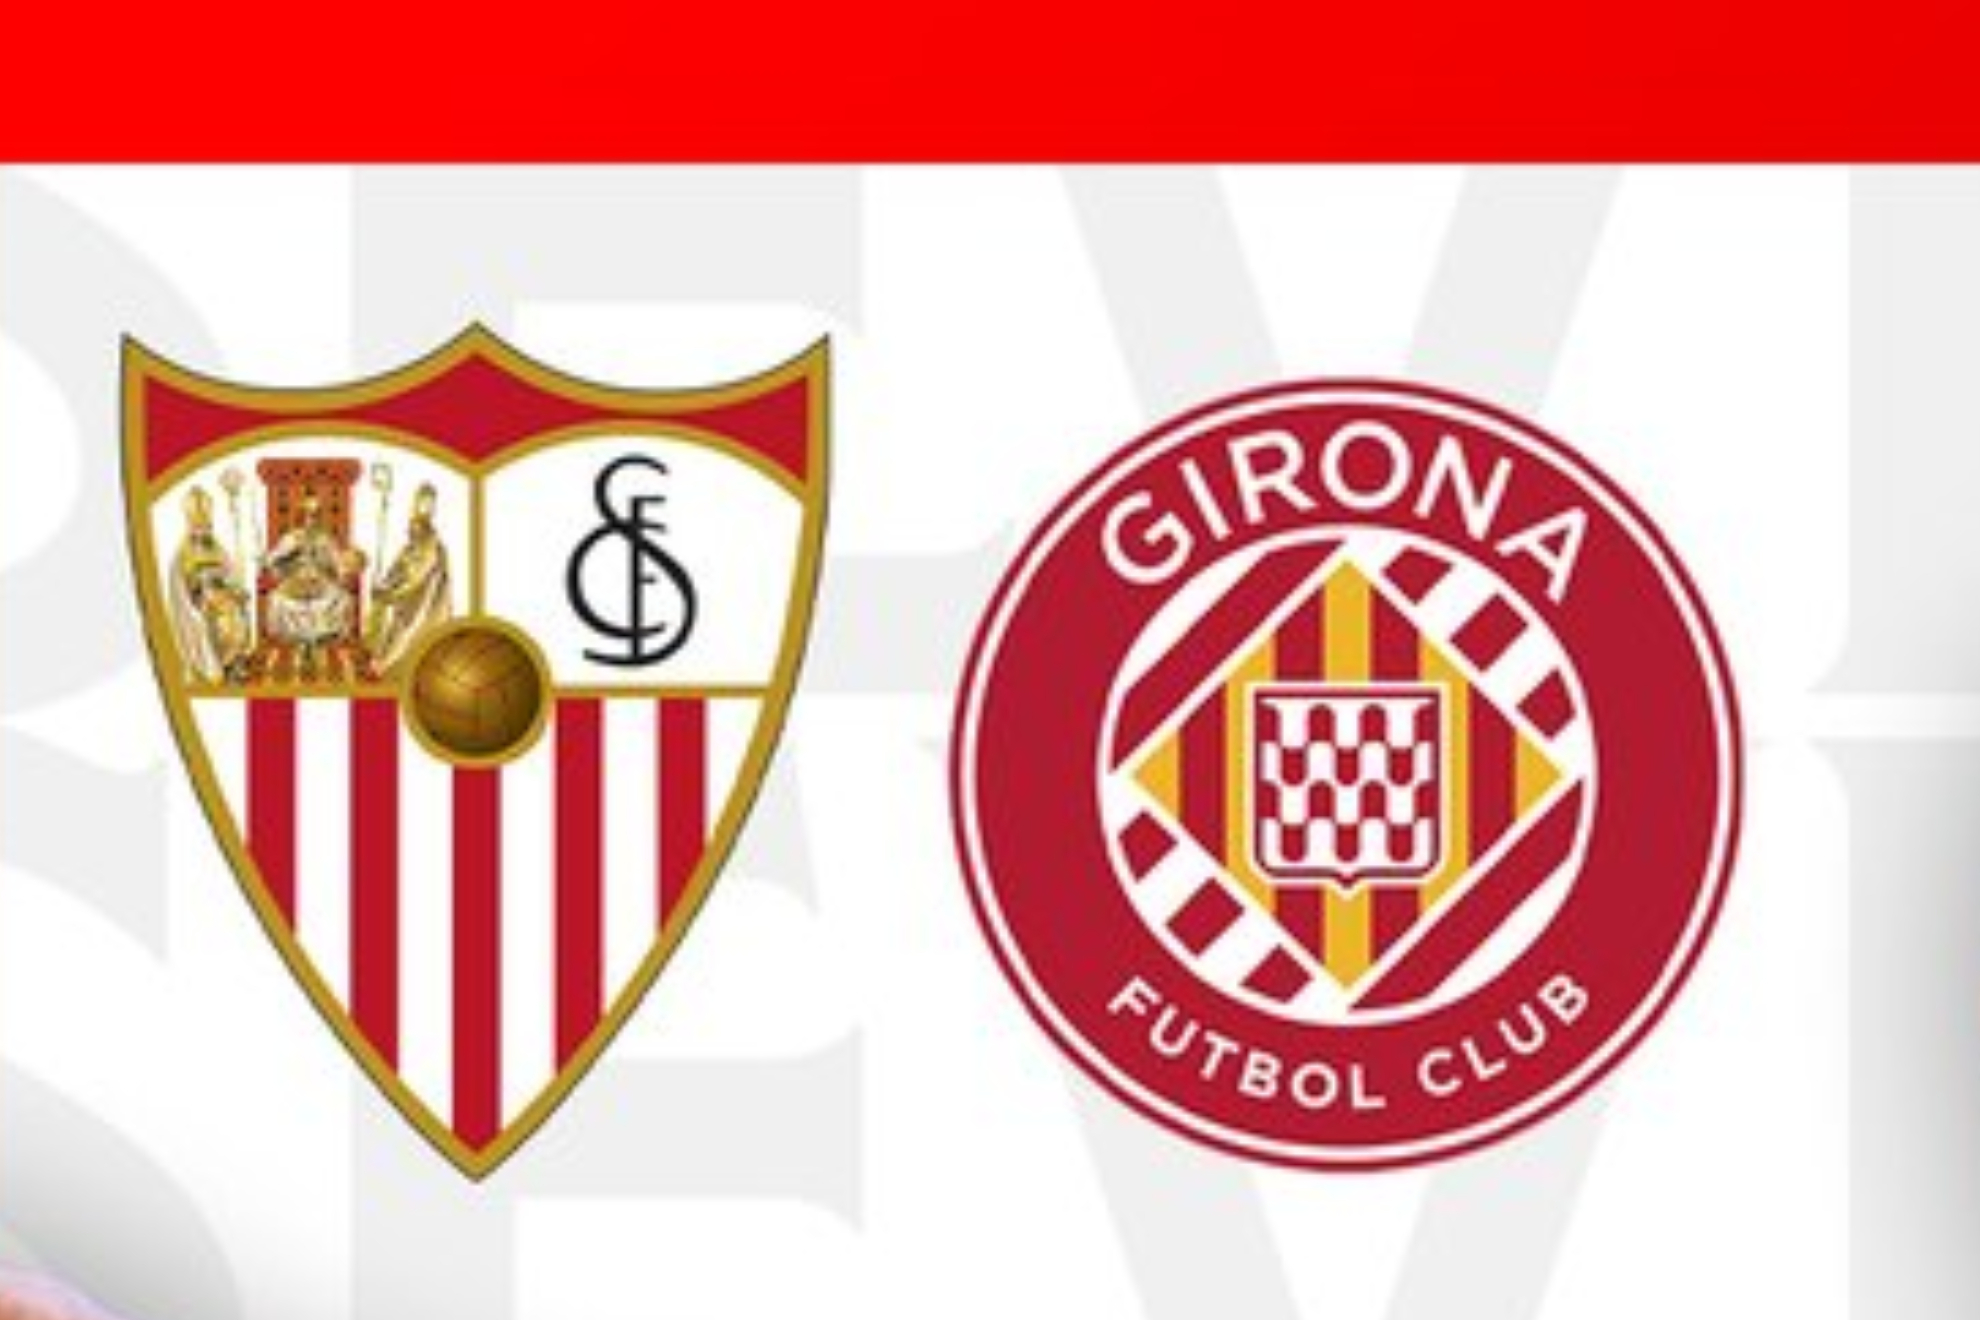 Sevilla vs Girona HOY sbado 26 de agosto.